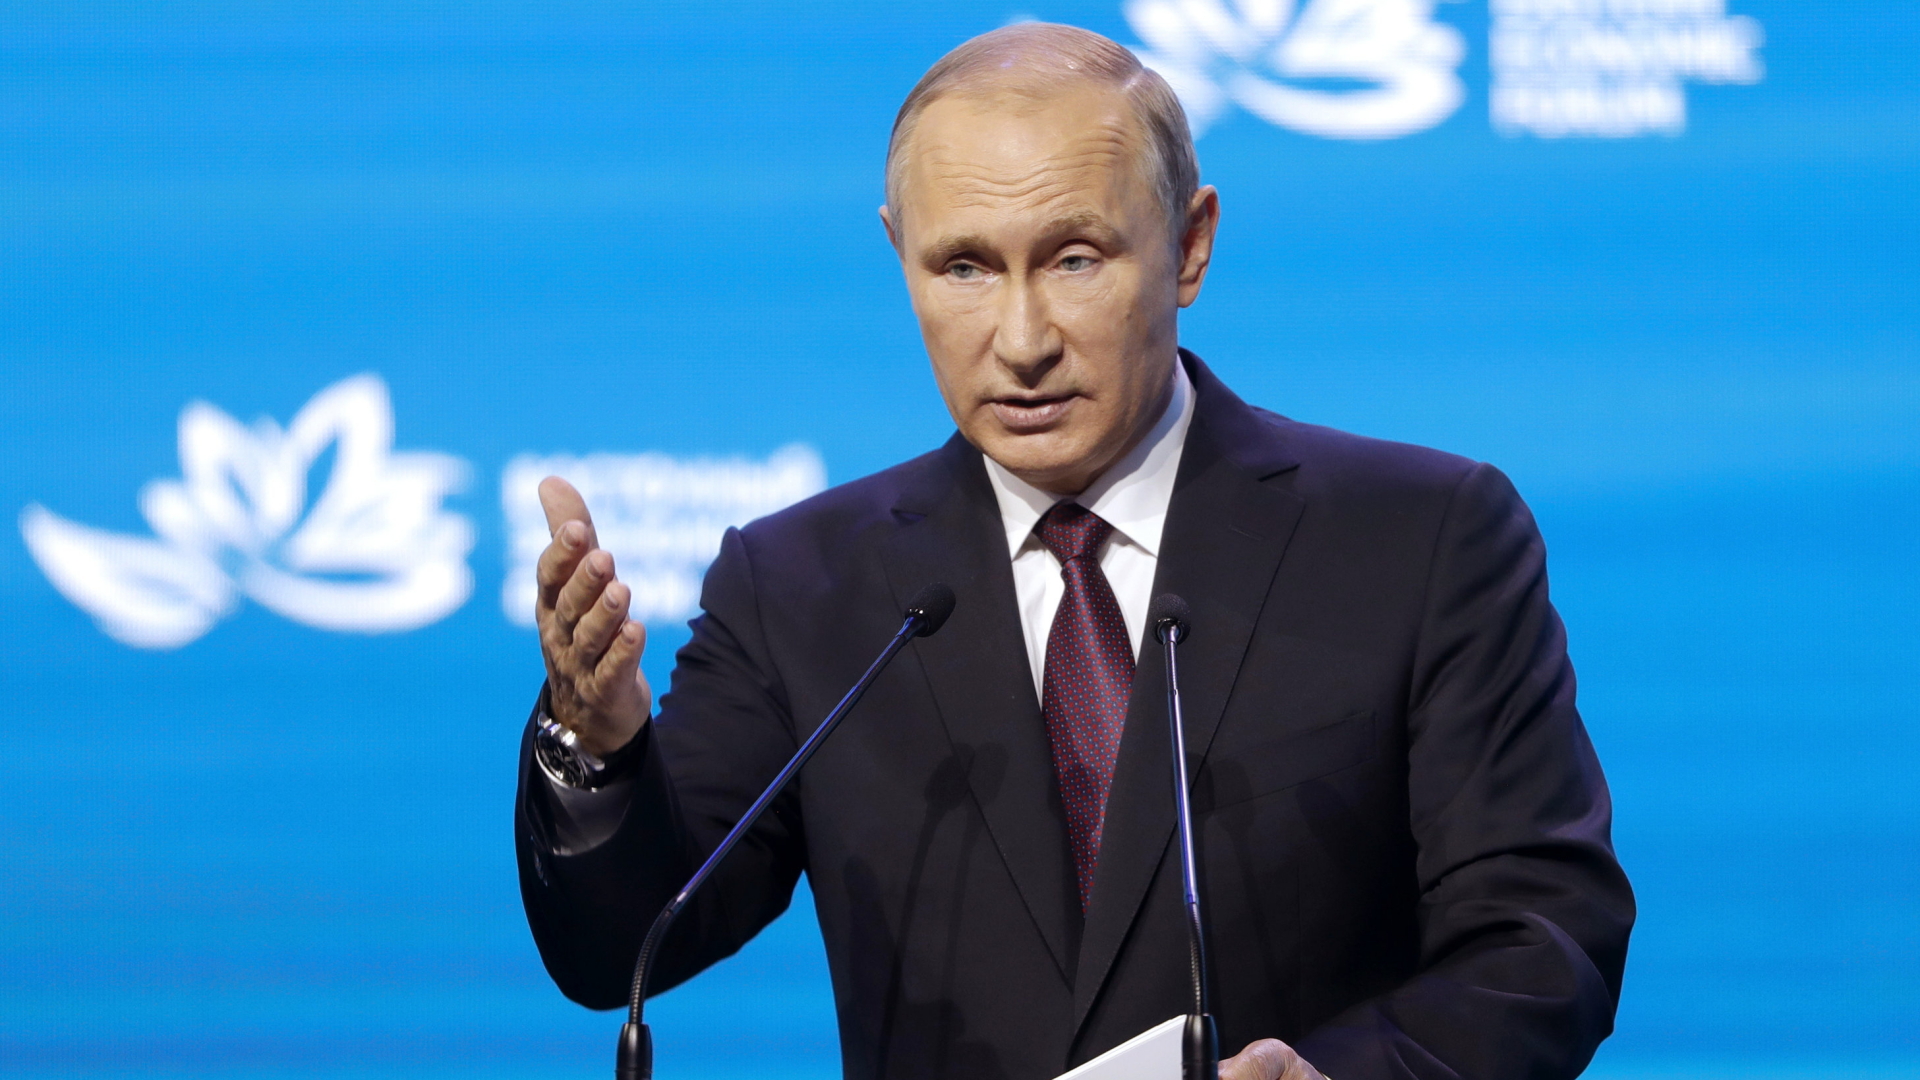 Putin bei einer Rede in Wladiwostok | dpa